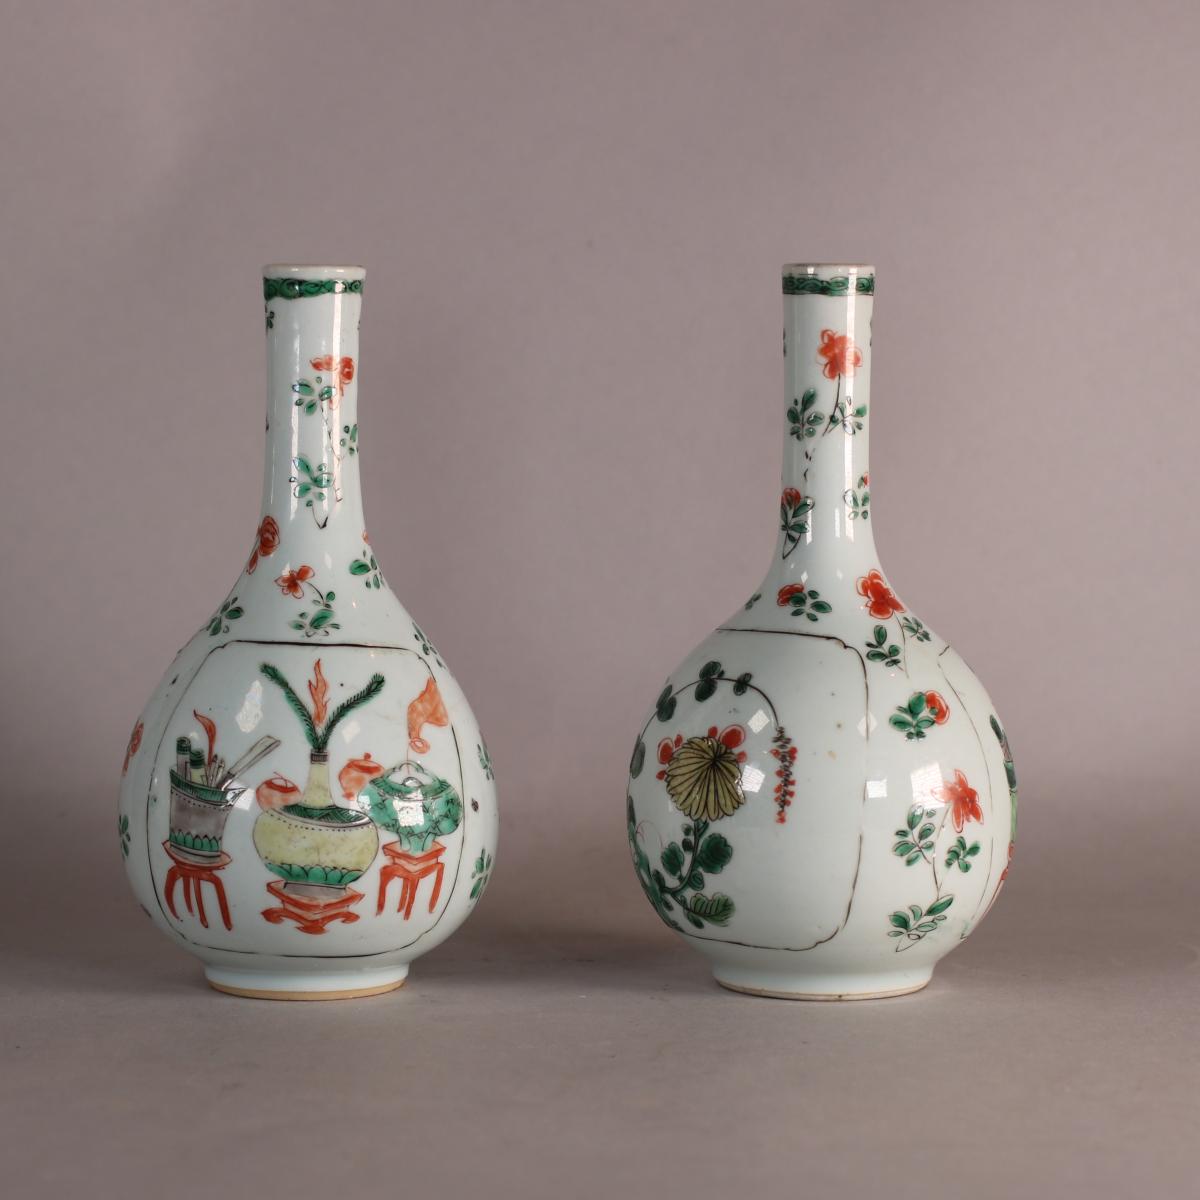 Alternative angle of pair of kangxi bottle vases